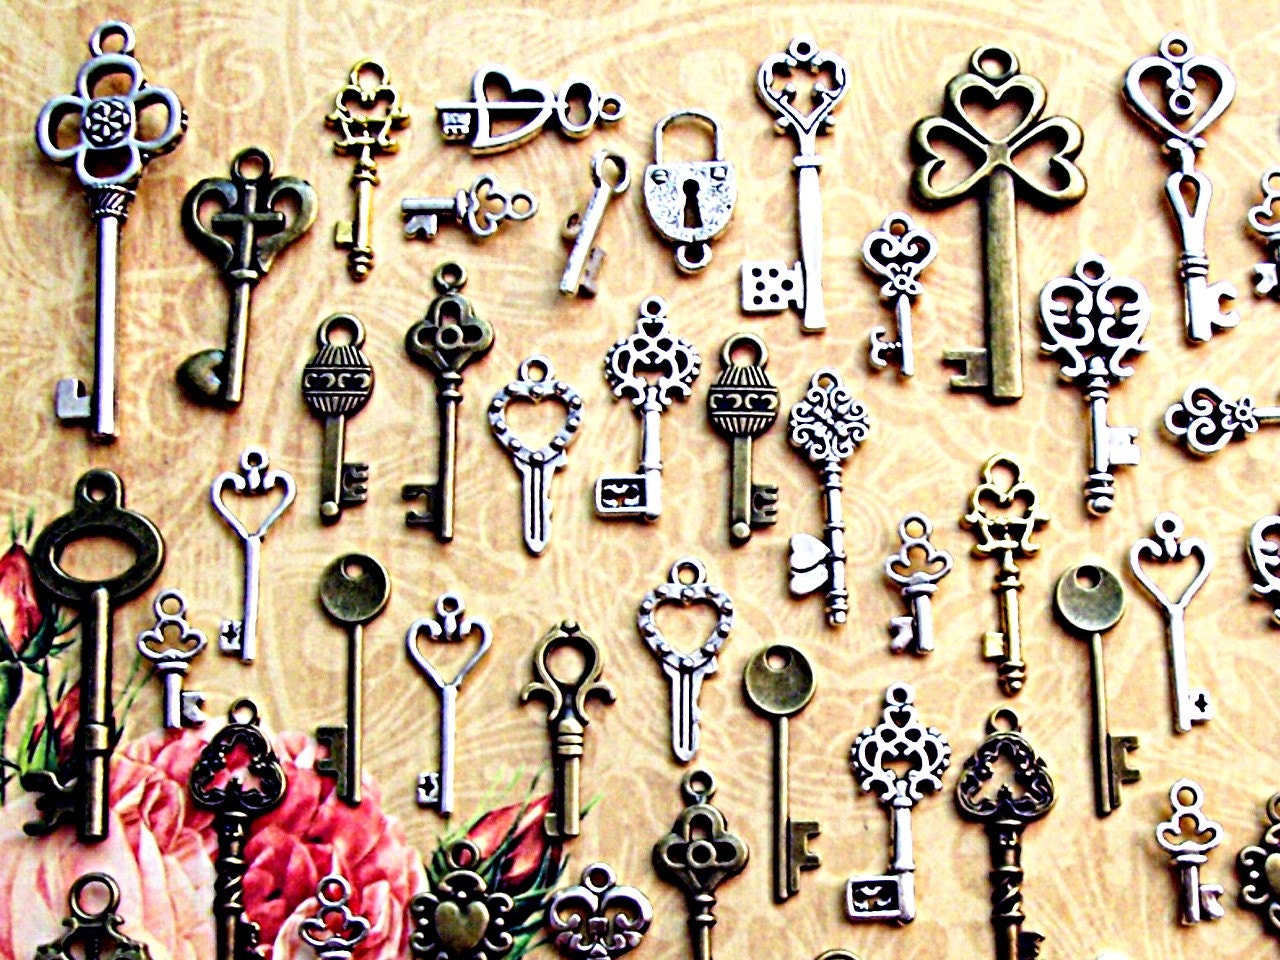 Love Joy Shabby Chic Vintage Keys - Gold and Silver Skeleton Keys